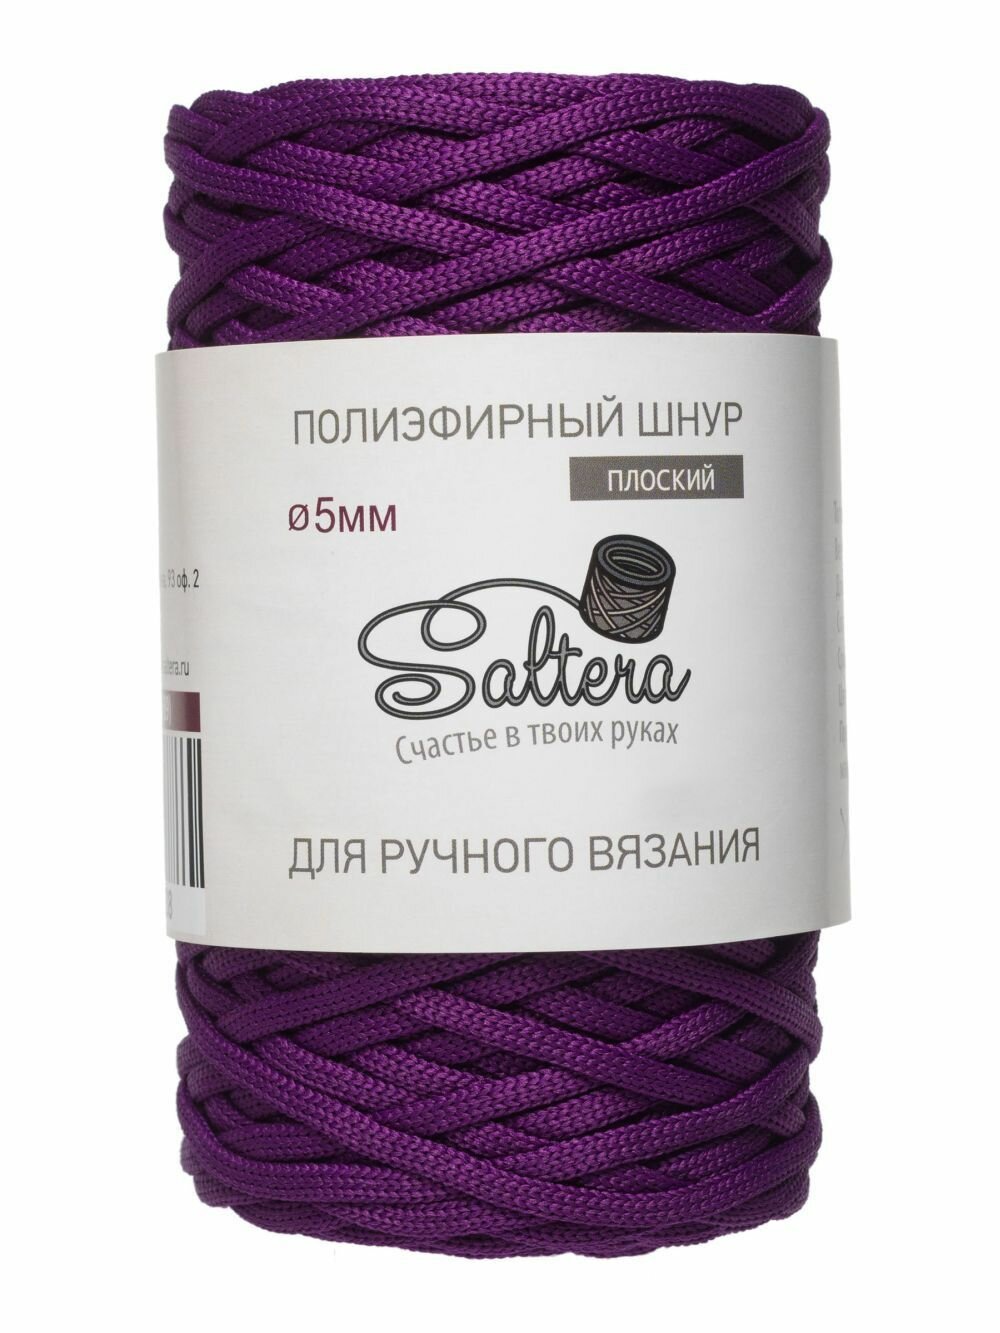 Пряжа Шнур полиэфирный 5 мм Saltera, фиолетовый - 89, 100% полиэфир, 1 моток, 390 г, 100 м.